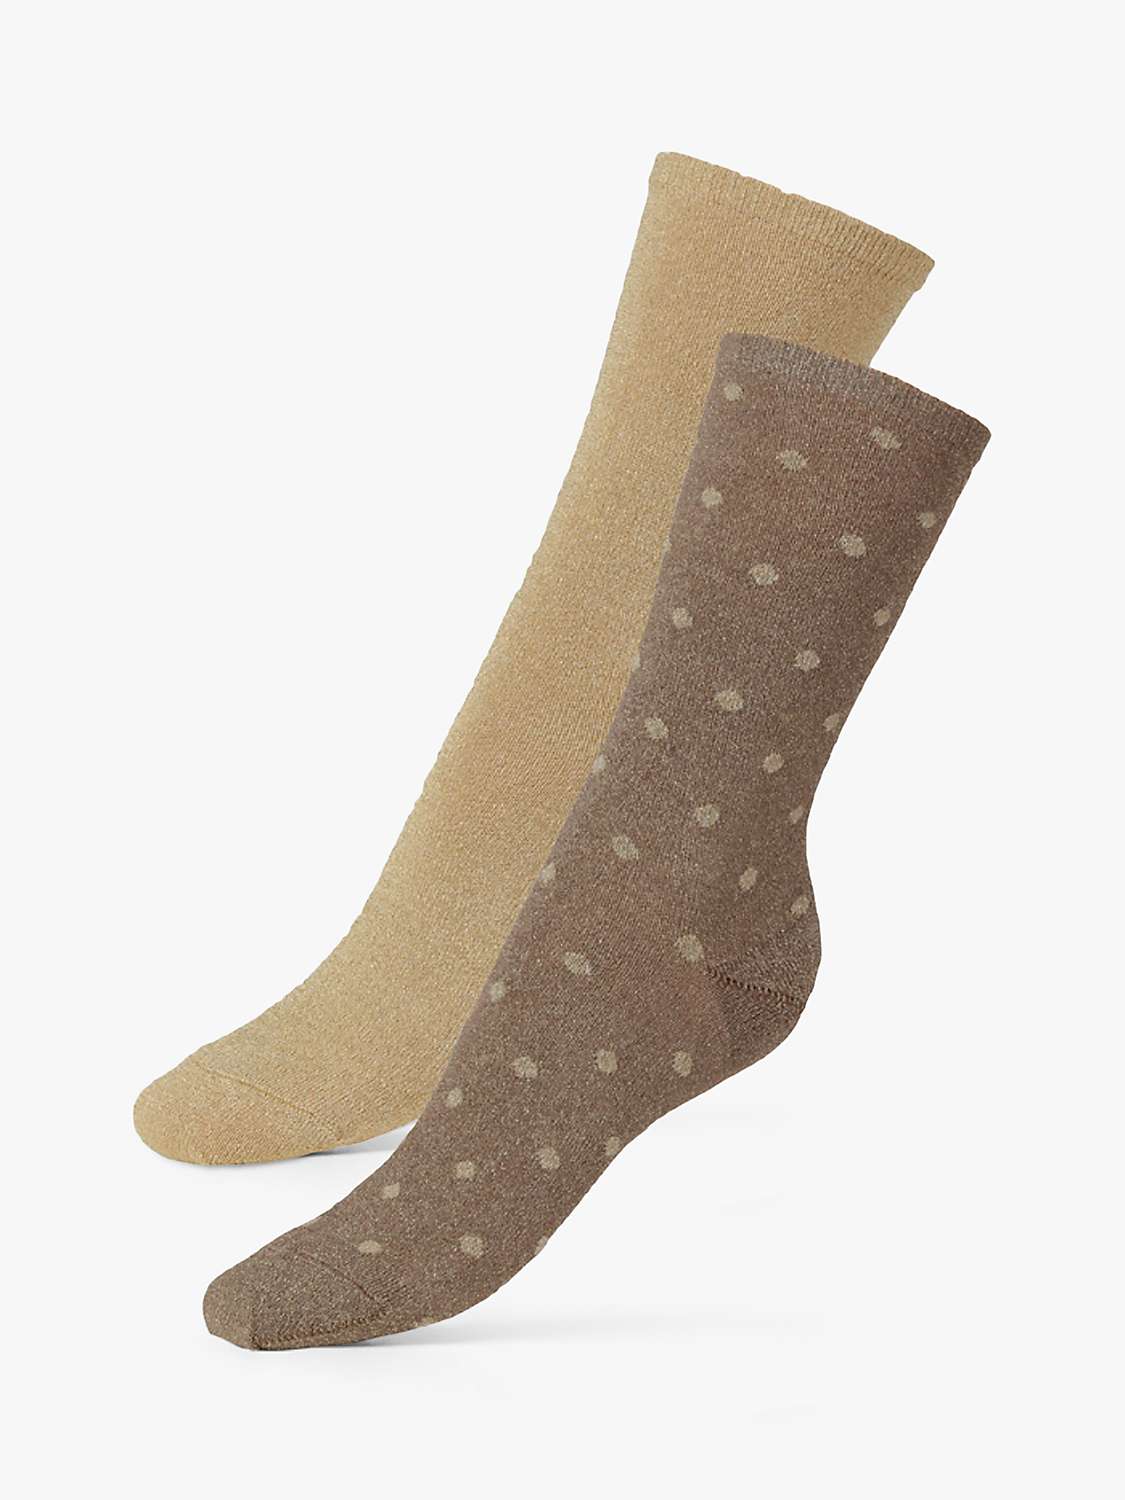 Buy Dear Denier Mei Soft Glitter Spot Socks, Pack of 2, Gold/Multi Online at johnlewis.com